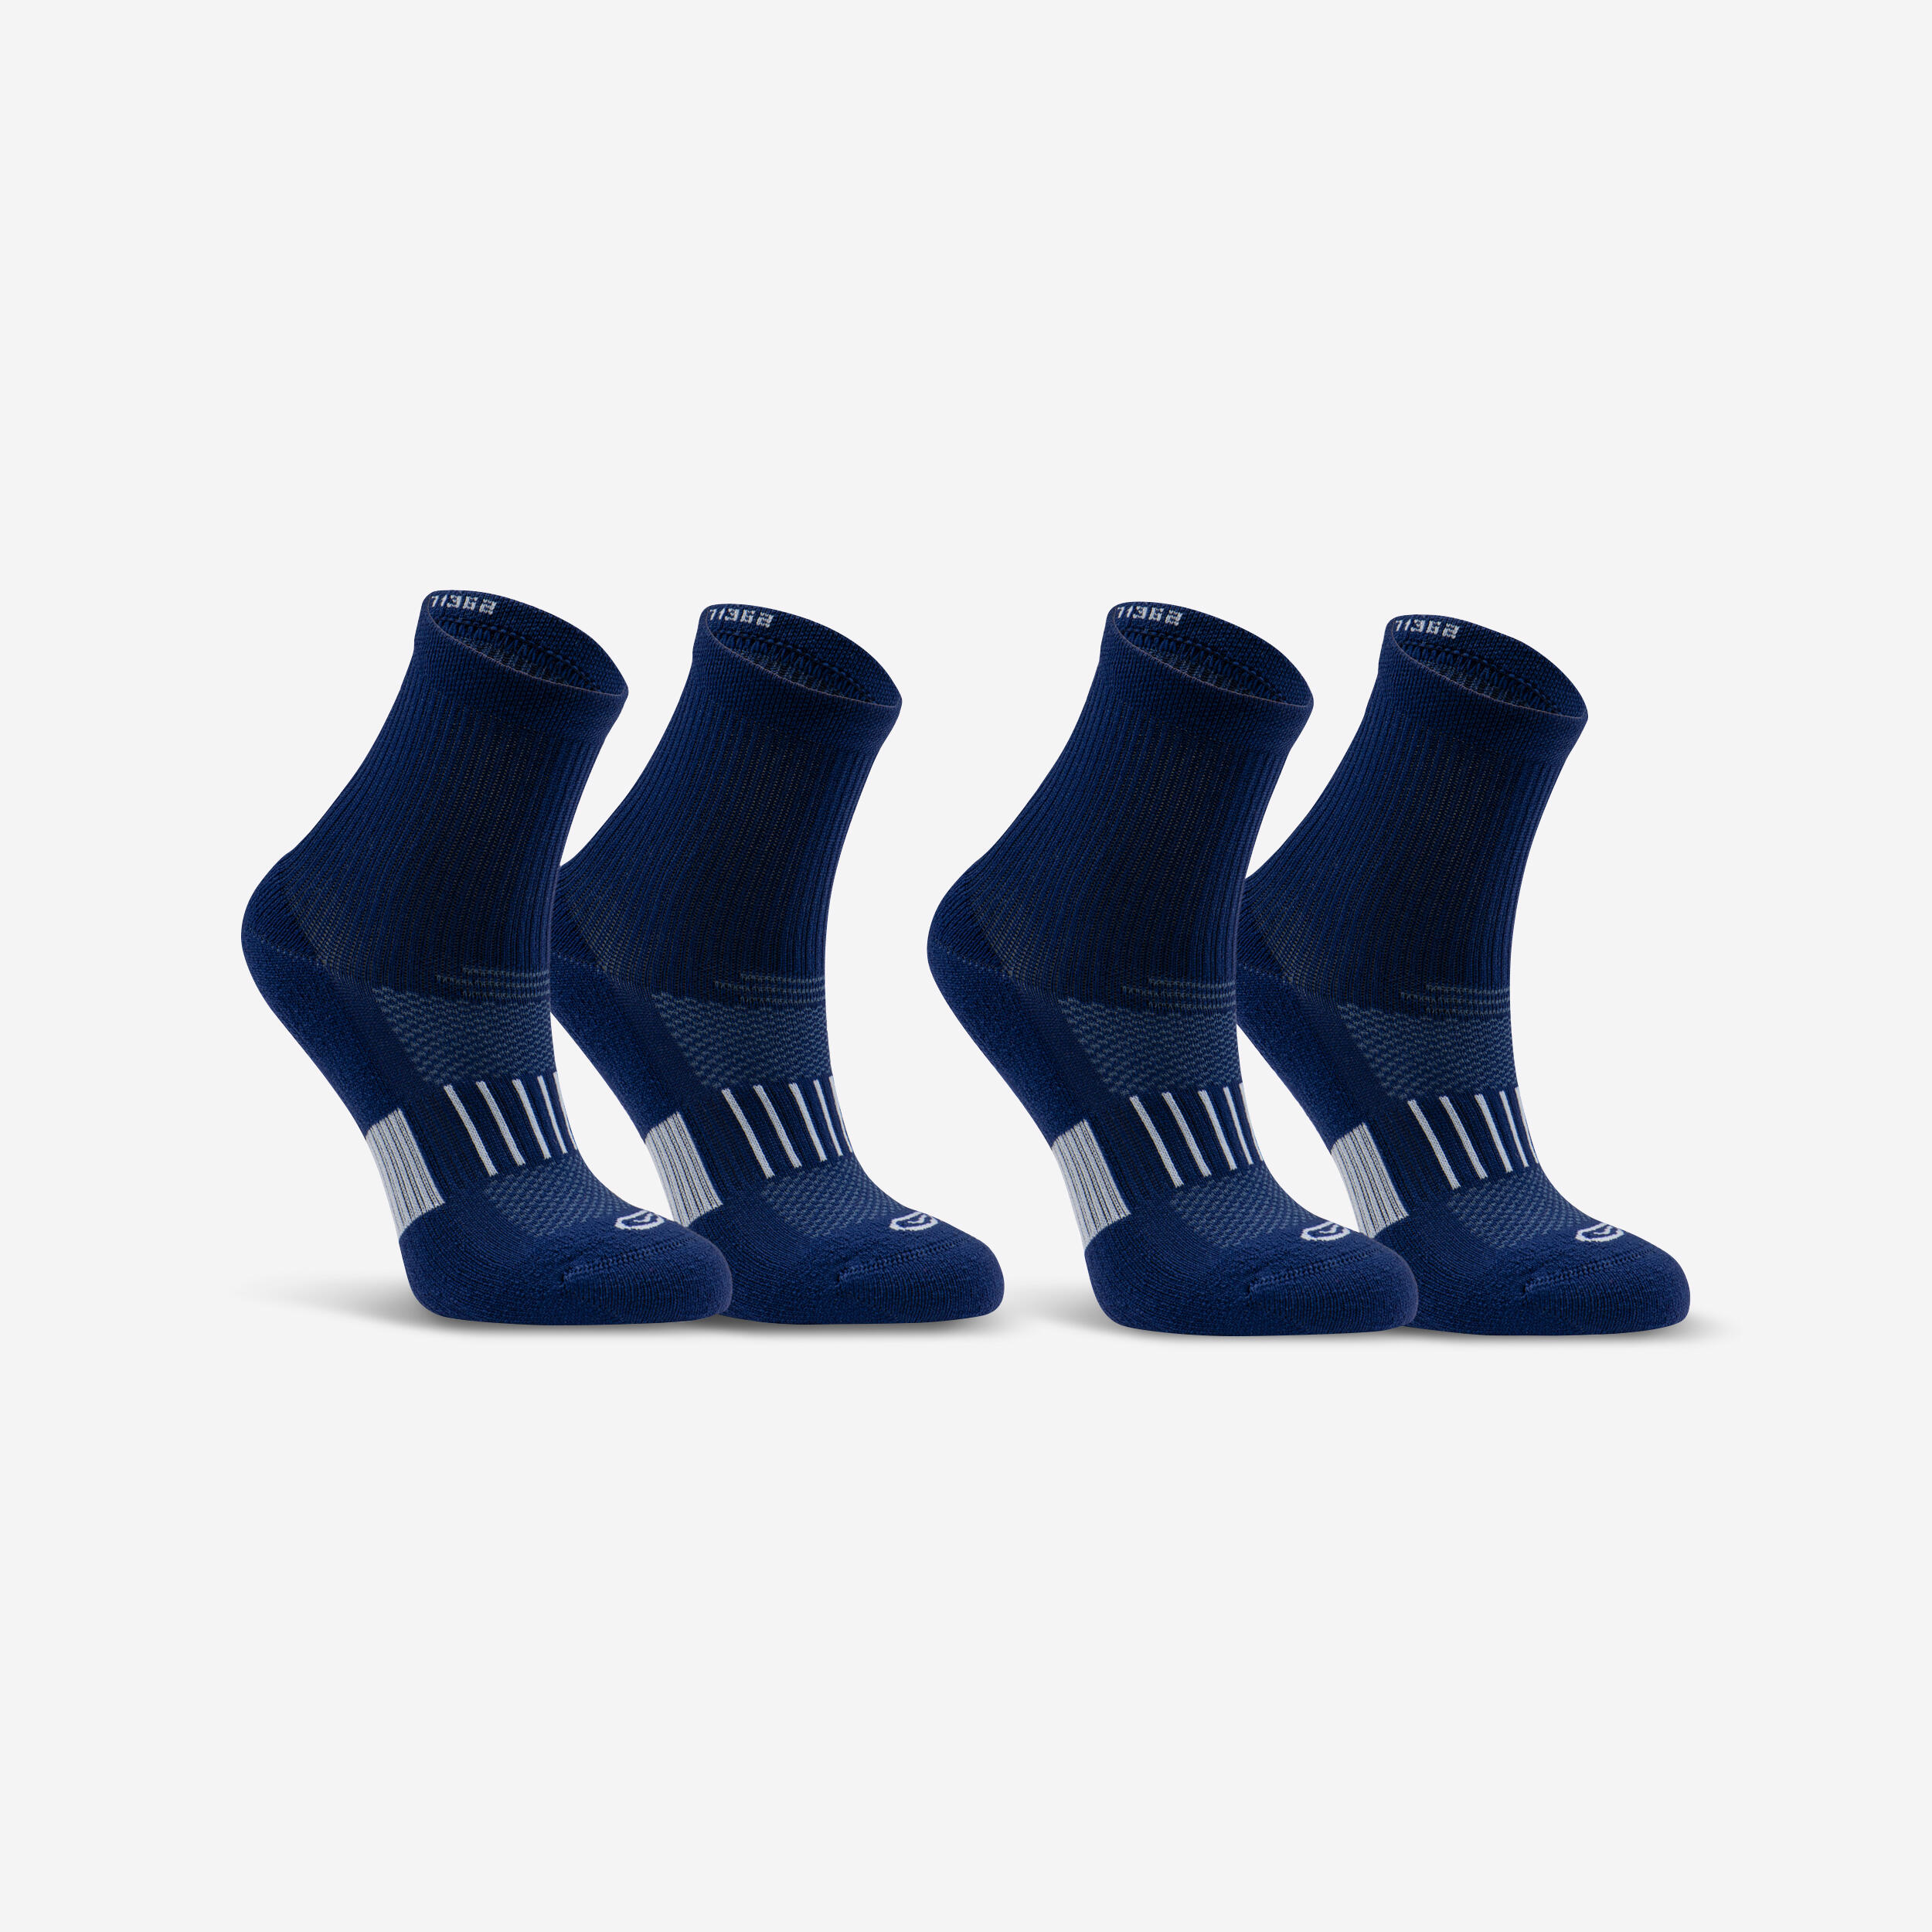 KIPRUN 500 MID kids' running socks 2-pack - navy blue 1/5